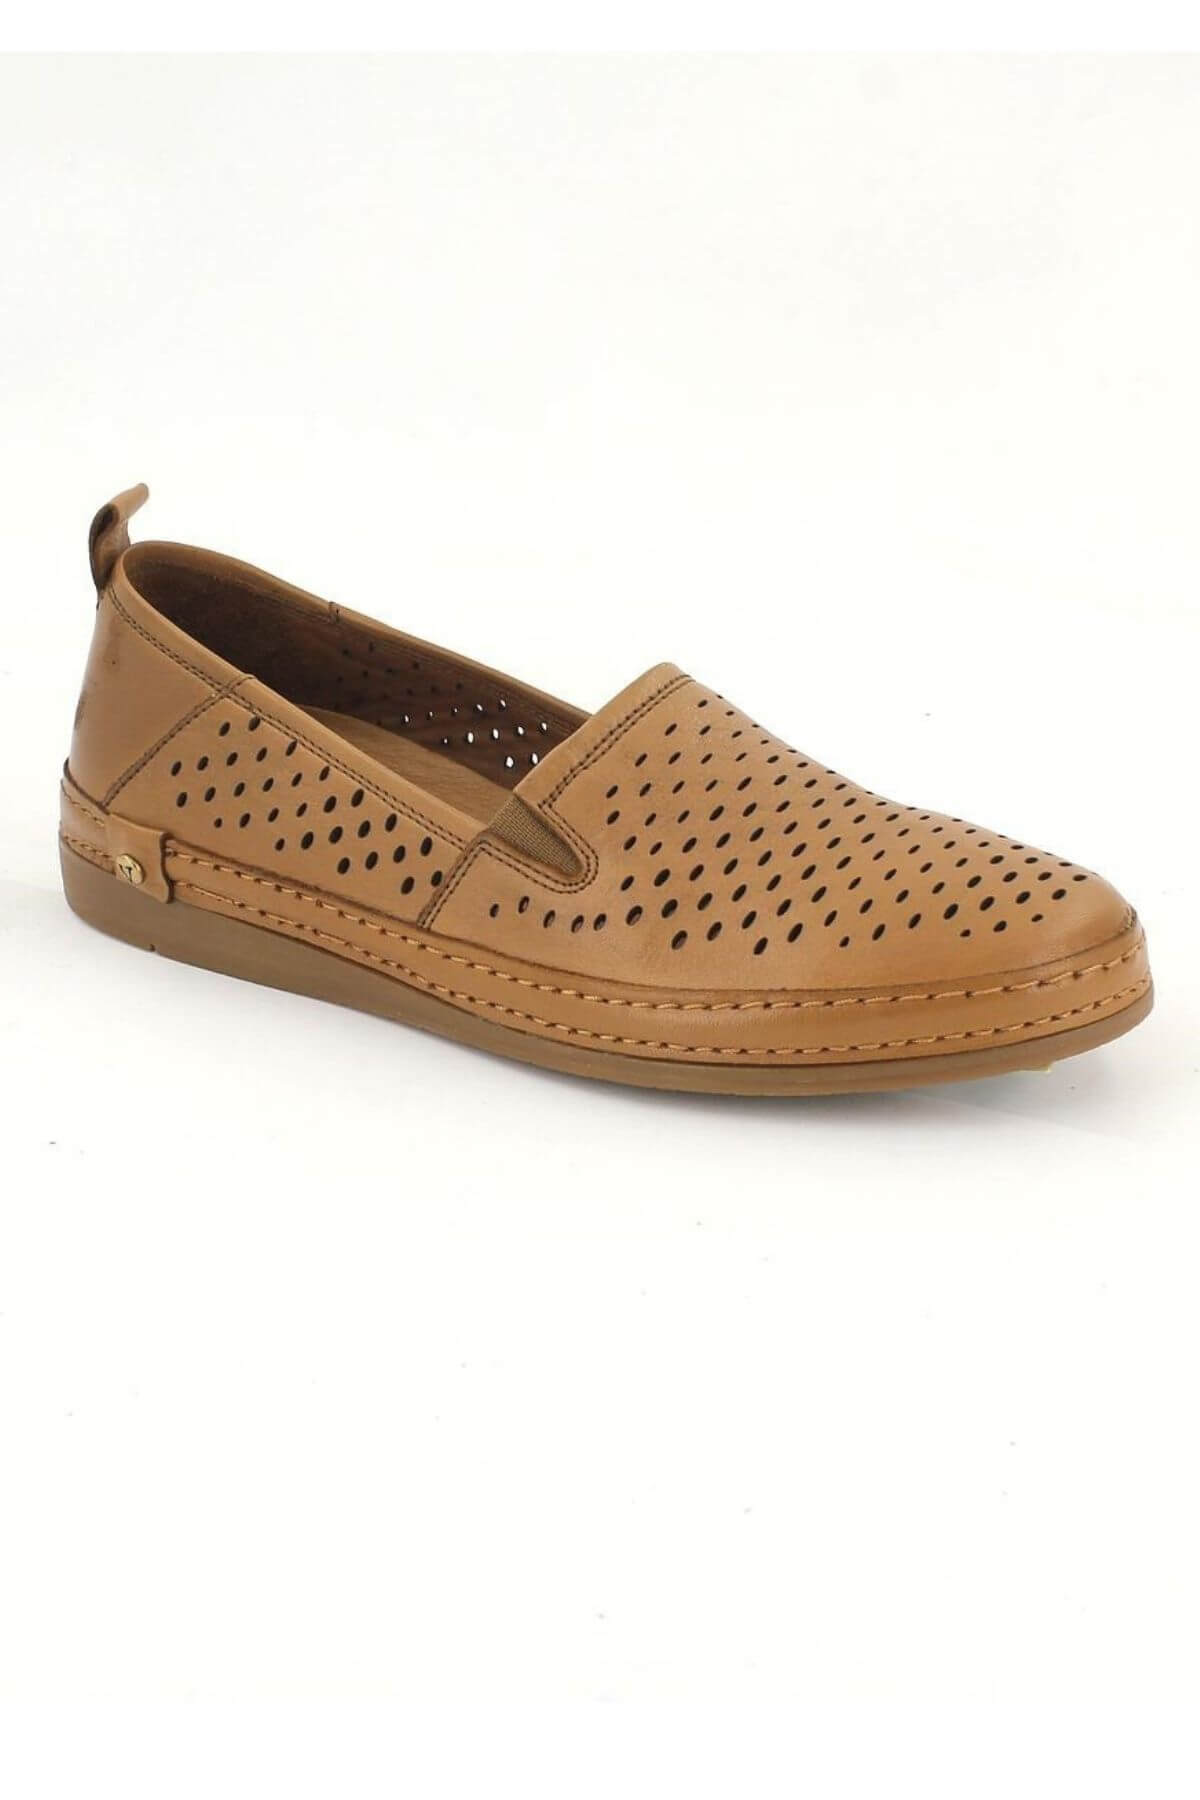 Kadın Yazlık Comfort Deri Ayakkabı Taba 2211201Y - Thumbnail